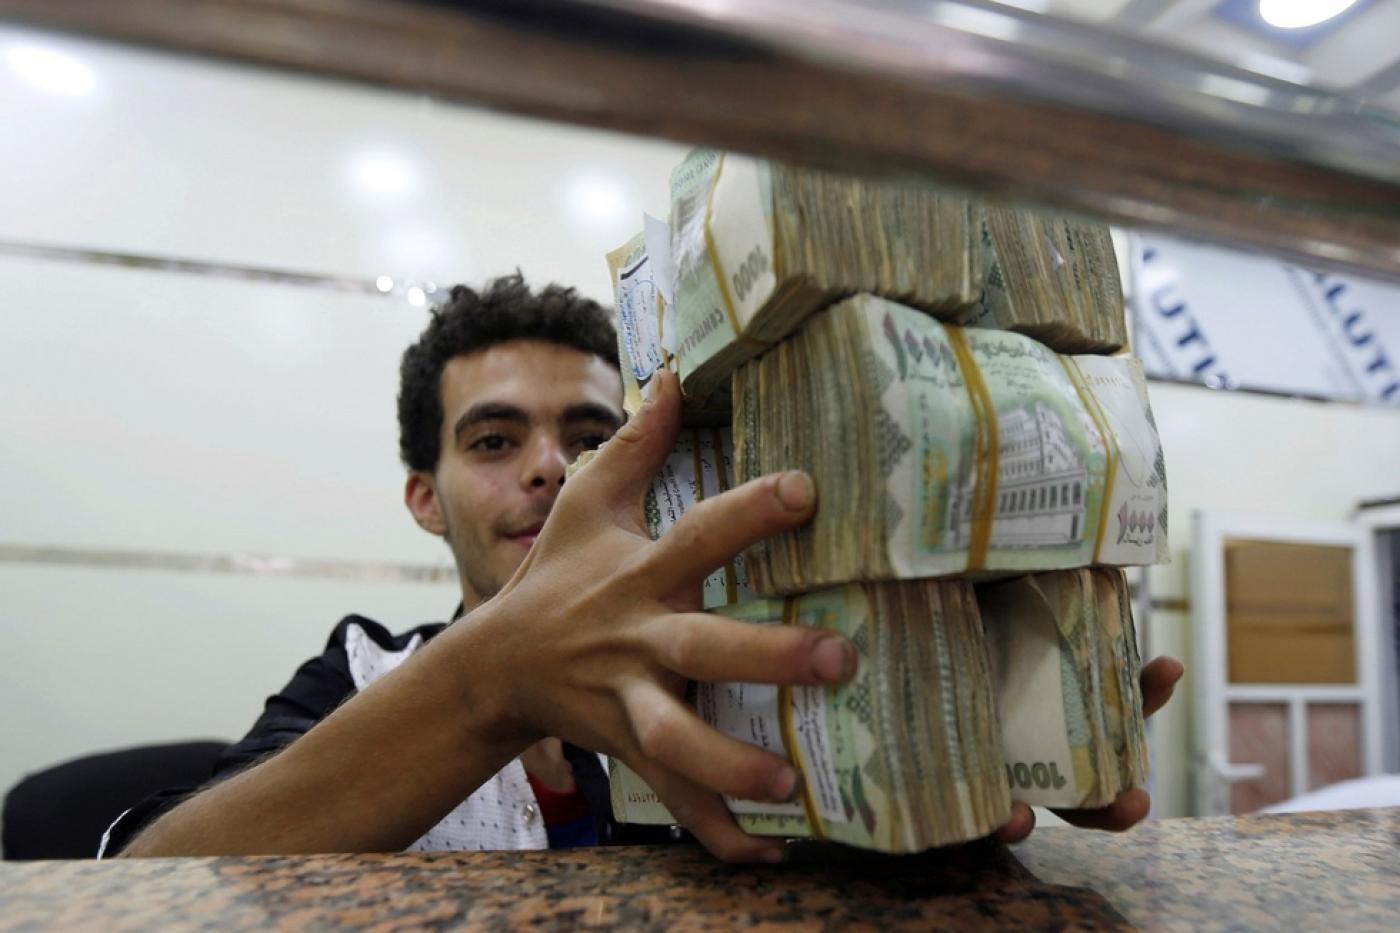 محلات الصرافة في مناطق سيطرة الحوثيين ترفض تسليم الحوالات المالية للمواطنين بالعملات الأجنبية